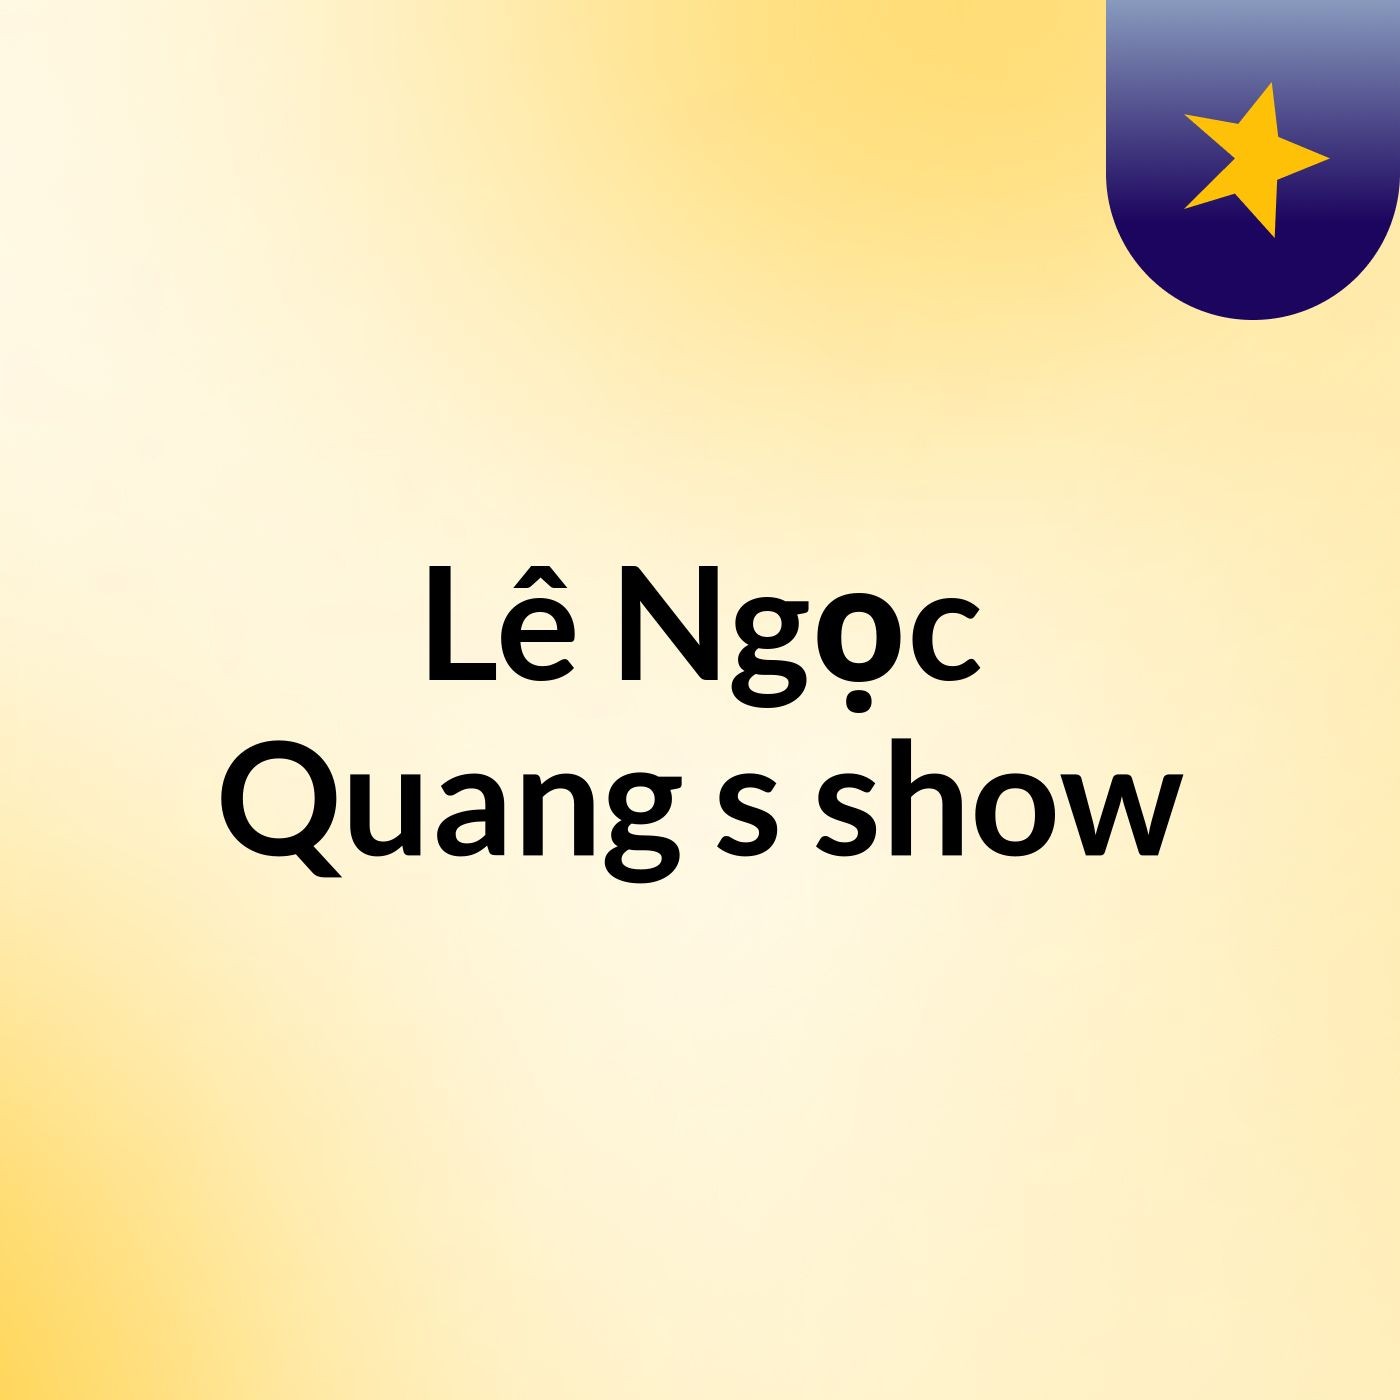 Lê Ngọc Quang's show